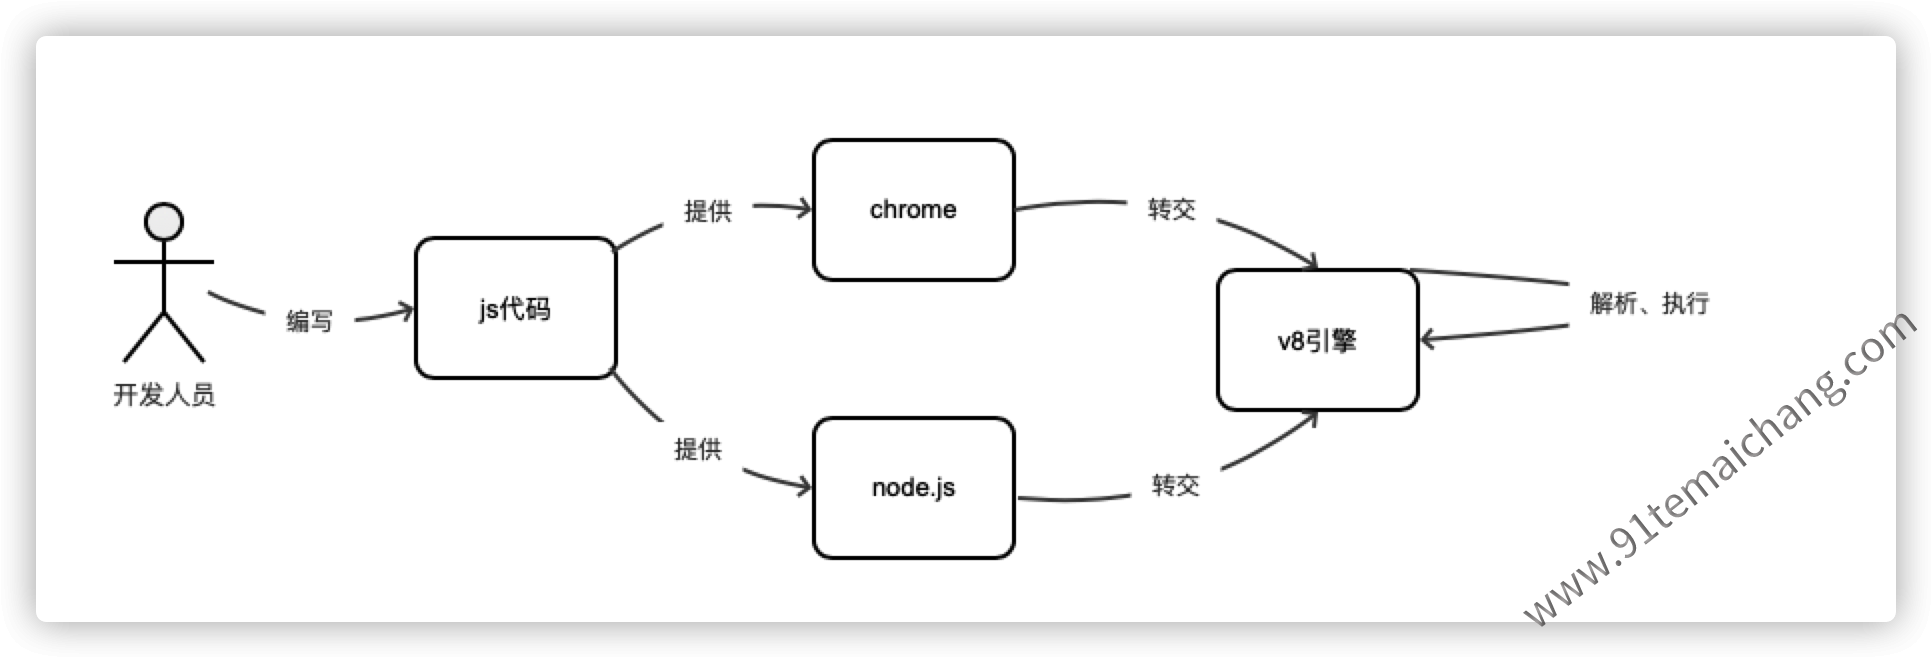 nodejs与chrome的一个js执行过程